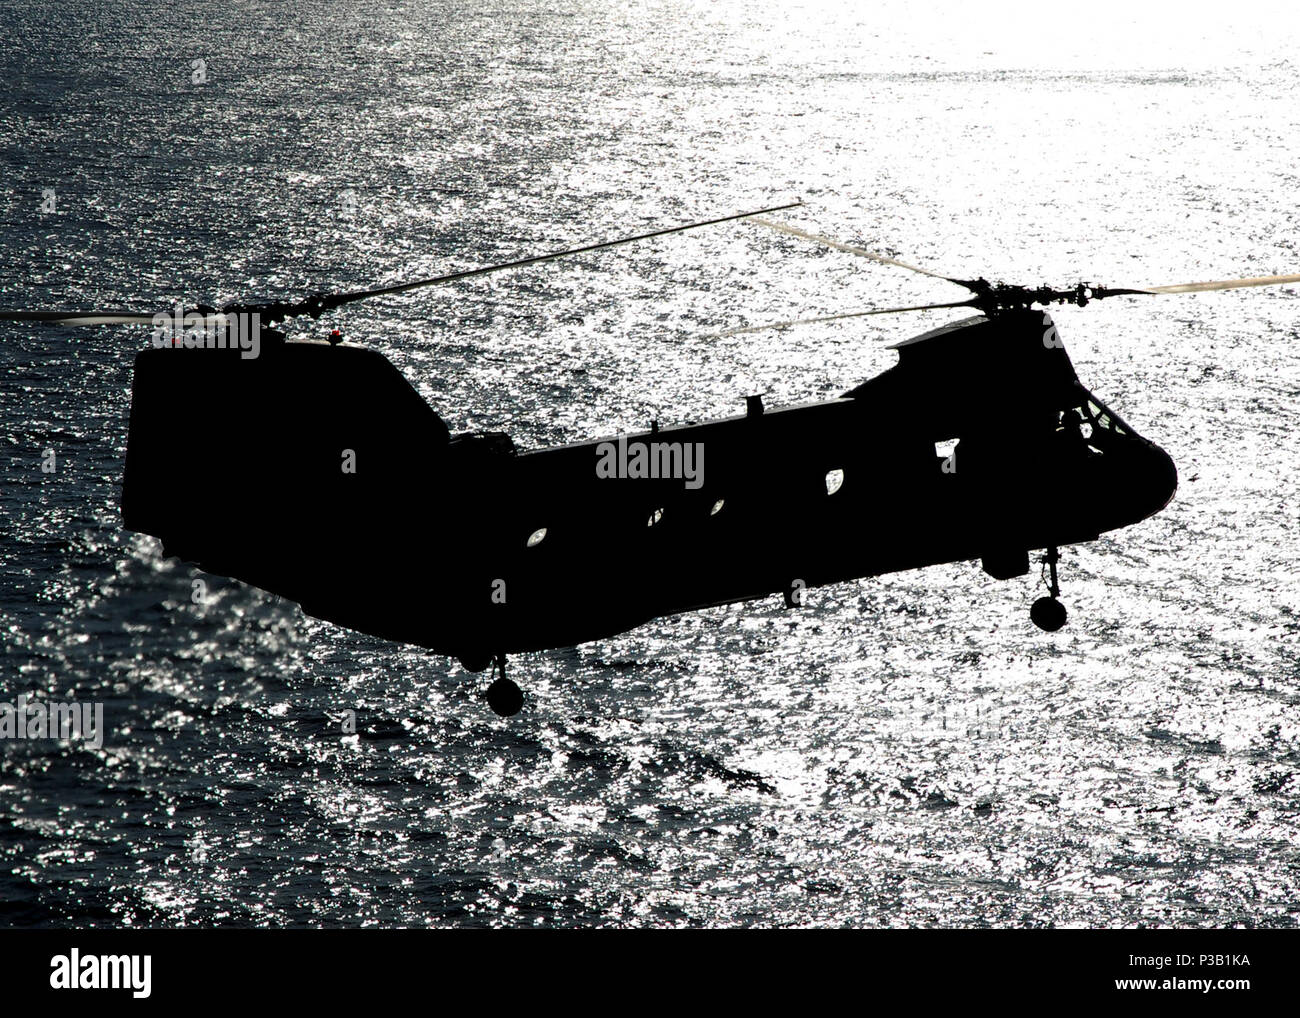 Océano (Nov. 3, 2008) un tipo CH-53E Super Stallion helicóptero se aproxima al buque de asalto anfibio USS Peleliu (LHA 5) durante las operaciones de desembarco de marines programado después de un despliegue de seis meses. Peleliu es el buque insignia del grupo de ataque expedicionario Peleliu. Foto de stock